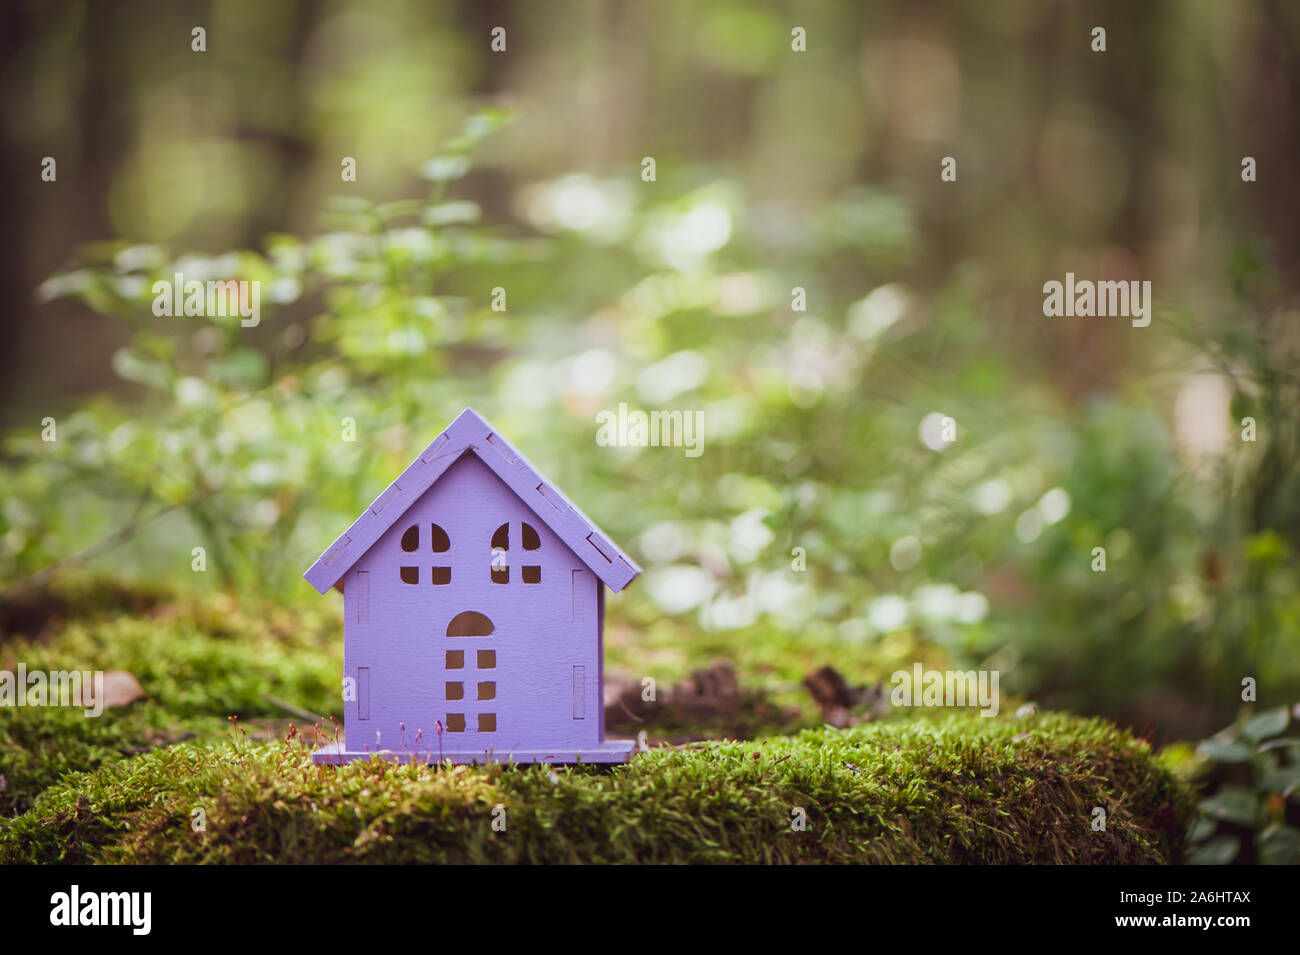 Fabelhaft, Spielzeug, Haus, die Farben von Lavendel, vor dem Hintergrund einer märchenhaften Wald. Konzept gemütliches Heim, gemütliche Welt. Stockfoto